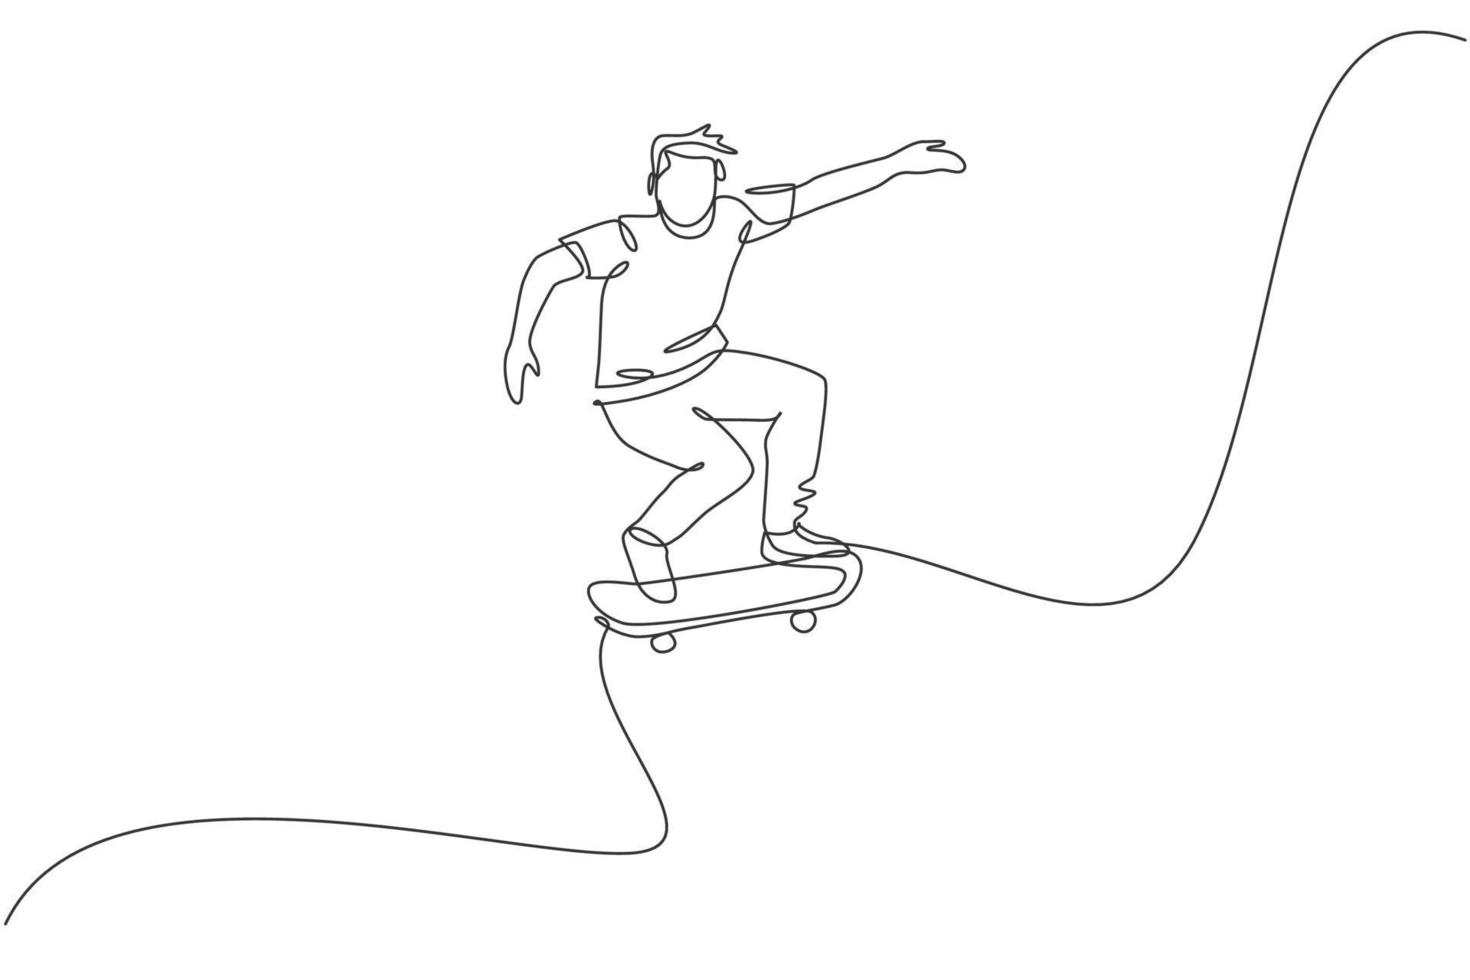 enkele doorlopende lijntekening van een jonge coole skateboarder die skate berijdt en een sprongtruc uitvoert in het skatepark. het beoefenen van buitensportconcept. trendy één lijn tekenen ontwerp vectorillustratie vector